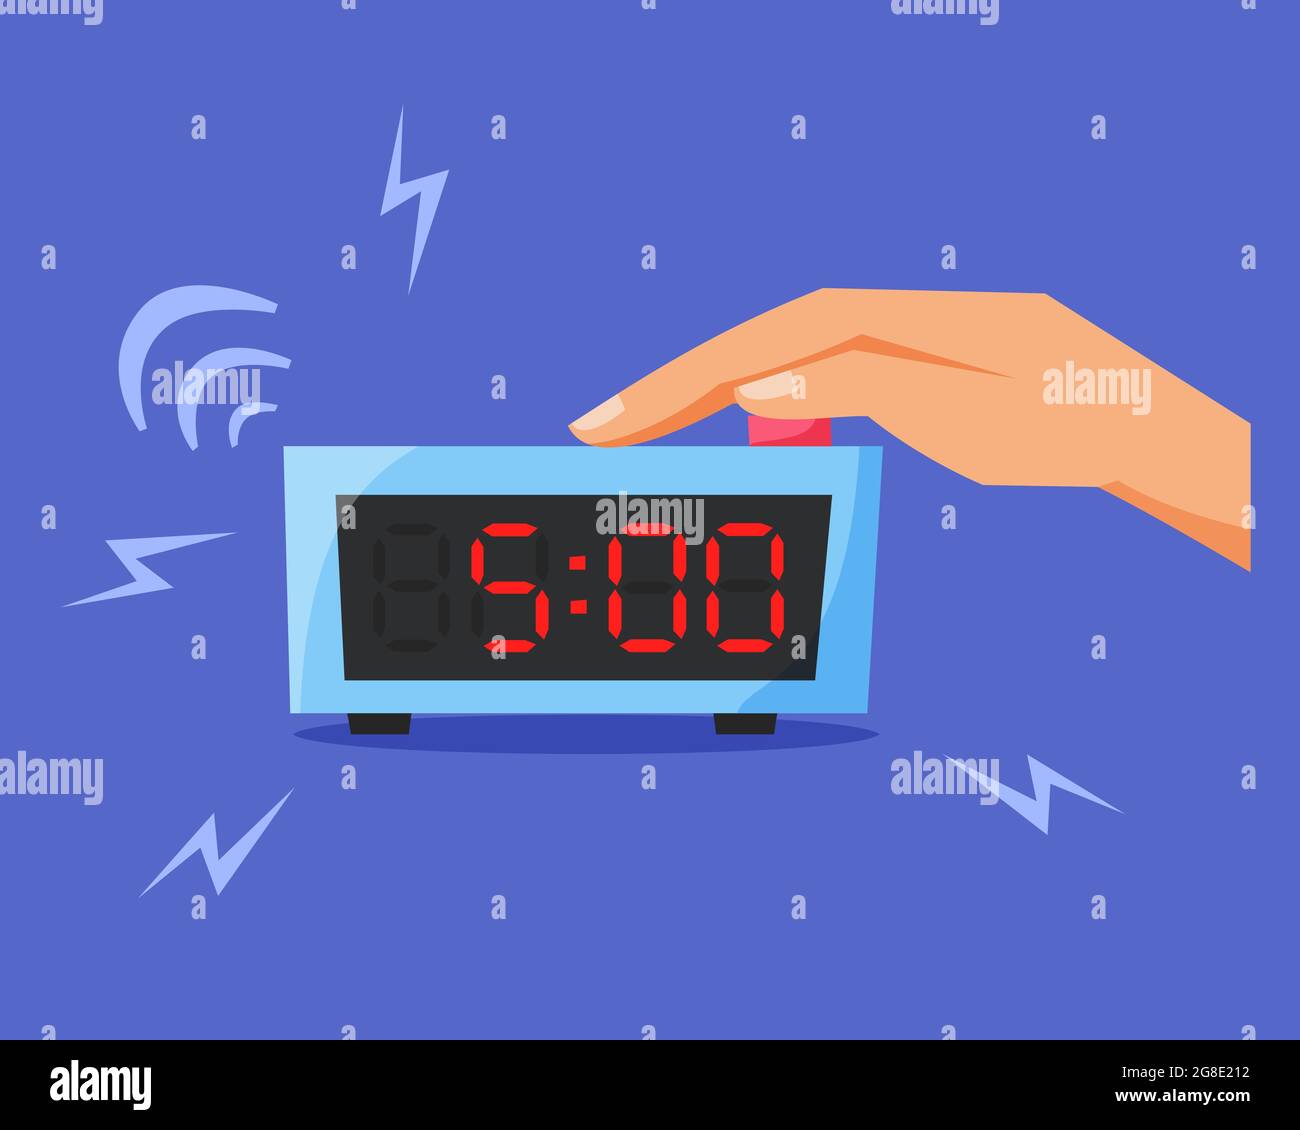 Schalten Sie den klingelnden Wecker aus, drücken Sie die Taste auf der elektronischen Uhr, Konzept am frühen Morgen, frühes Aufwachen, flache Vektorgrafik Stock Vektor